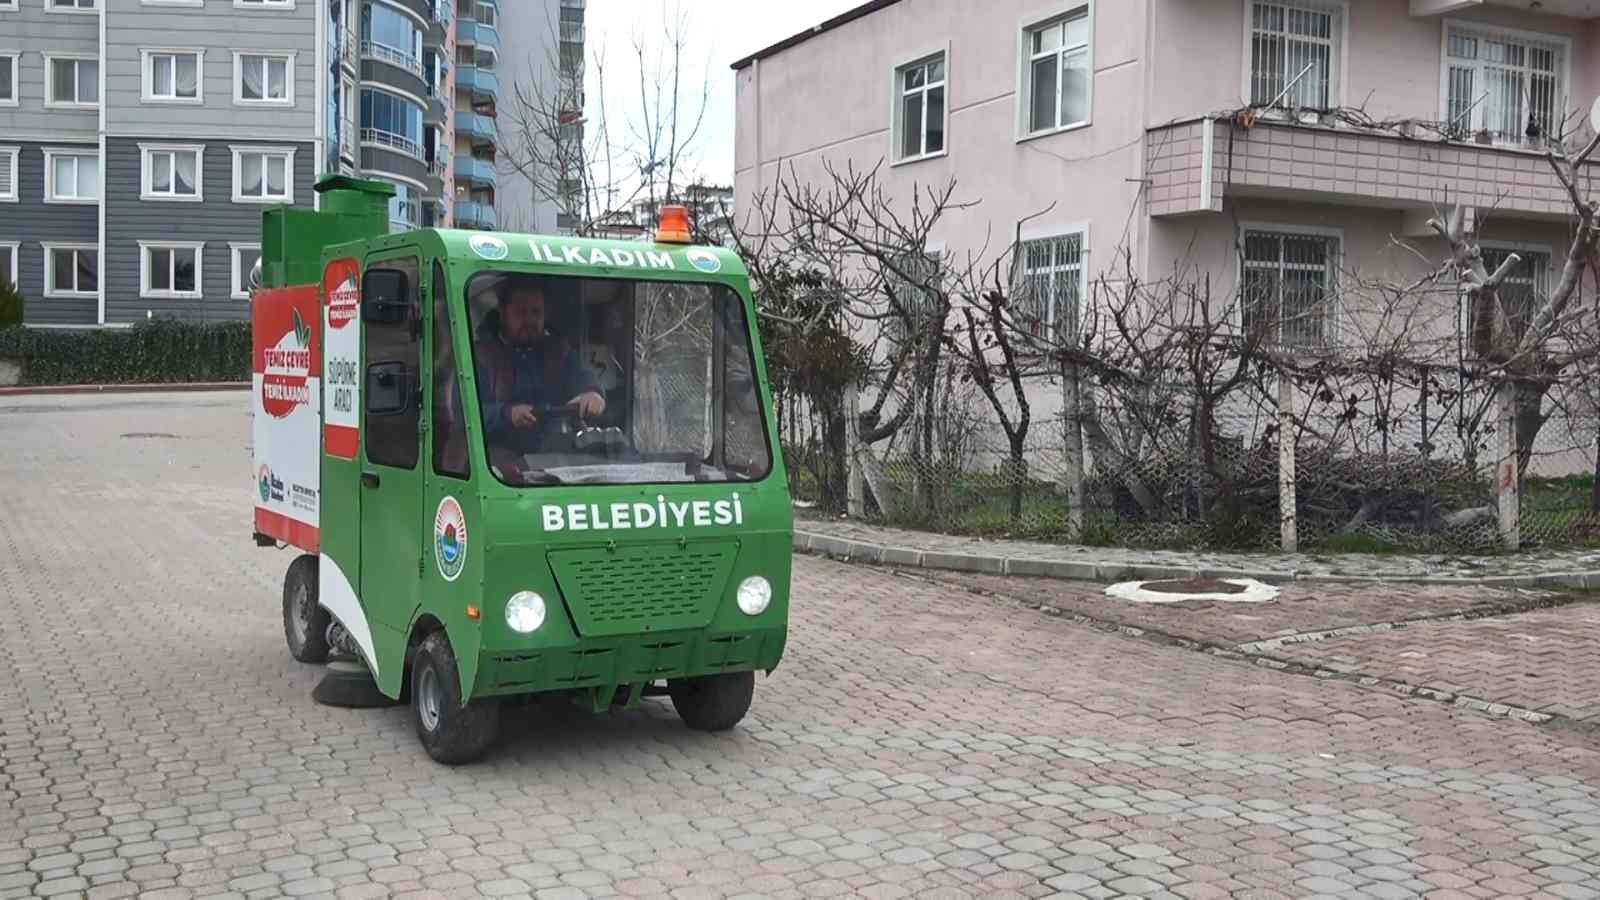 Belediye elektrikli süpürge aracı üretti
